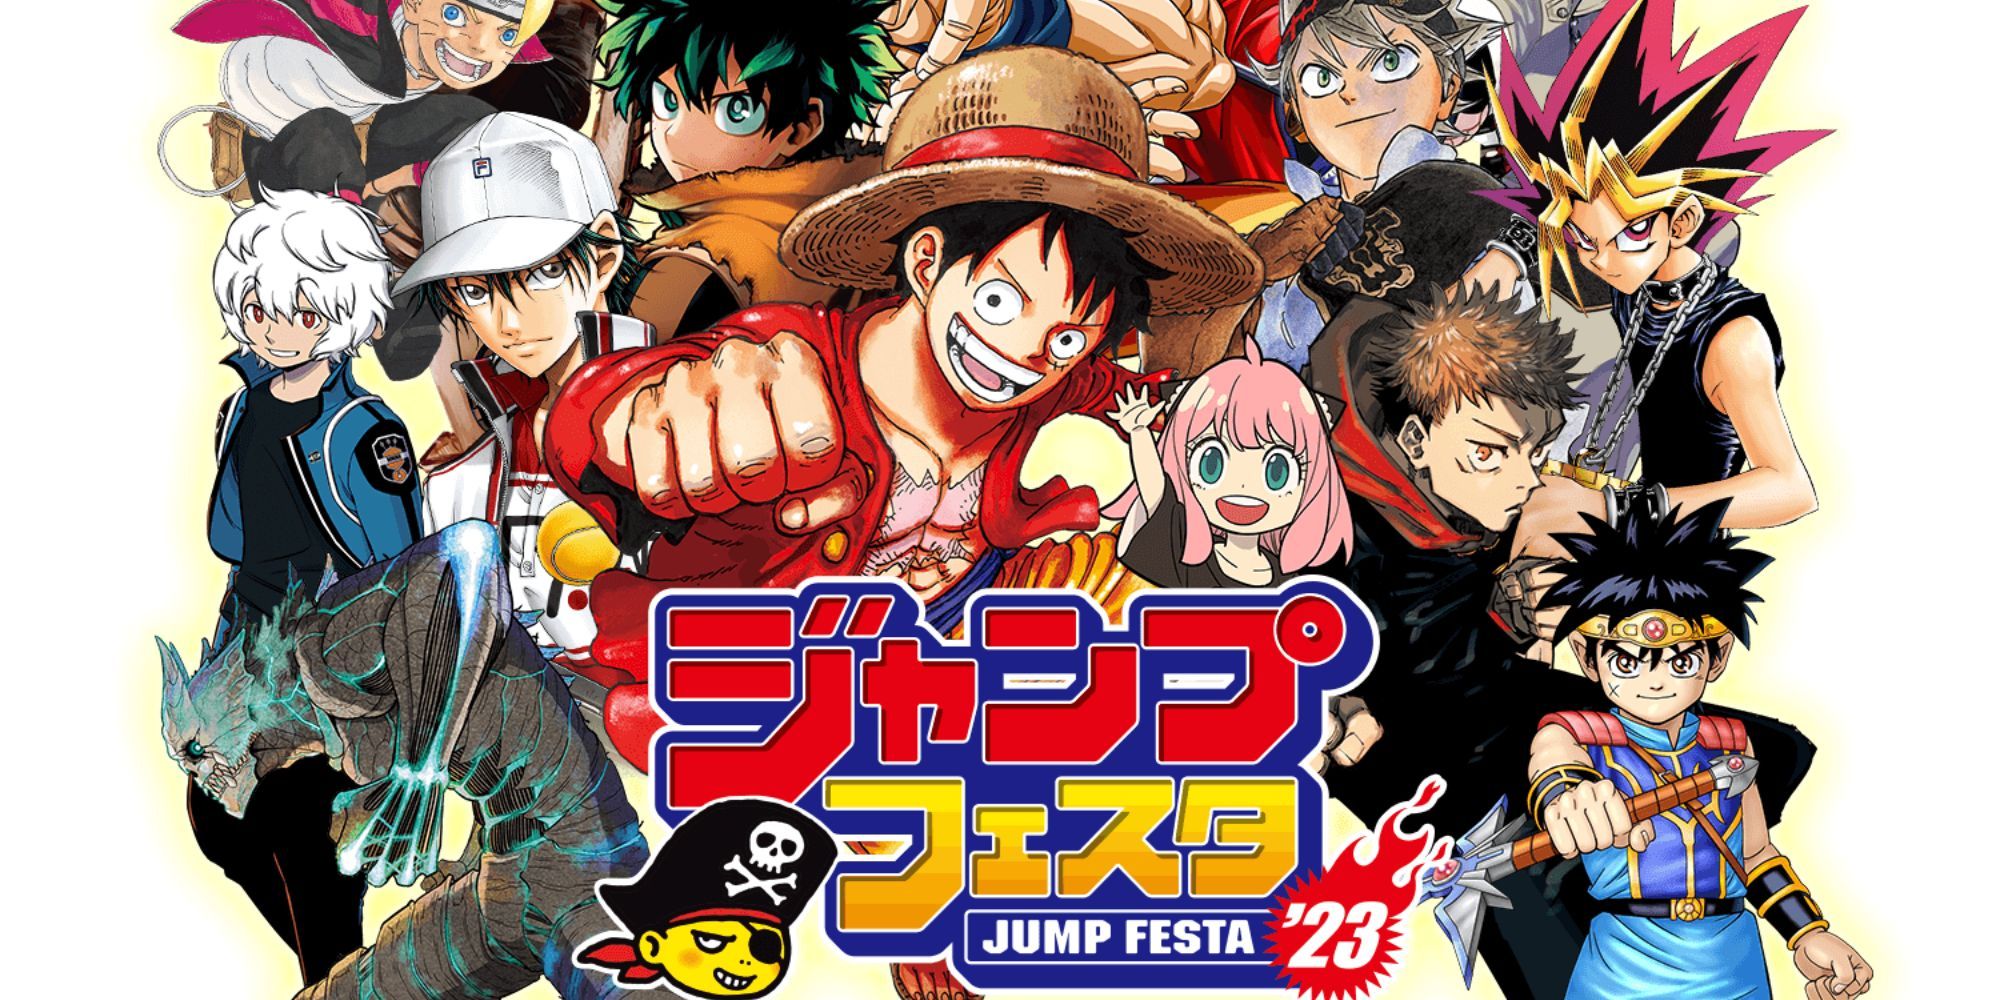 Tổng hợp tất tần tật về những thông tin manga/anime quan trọng được công bố  trong sự kiện Jump Festa 2022!